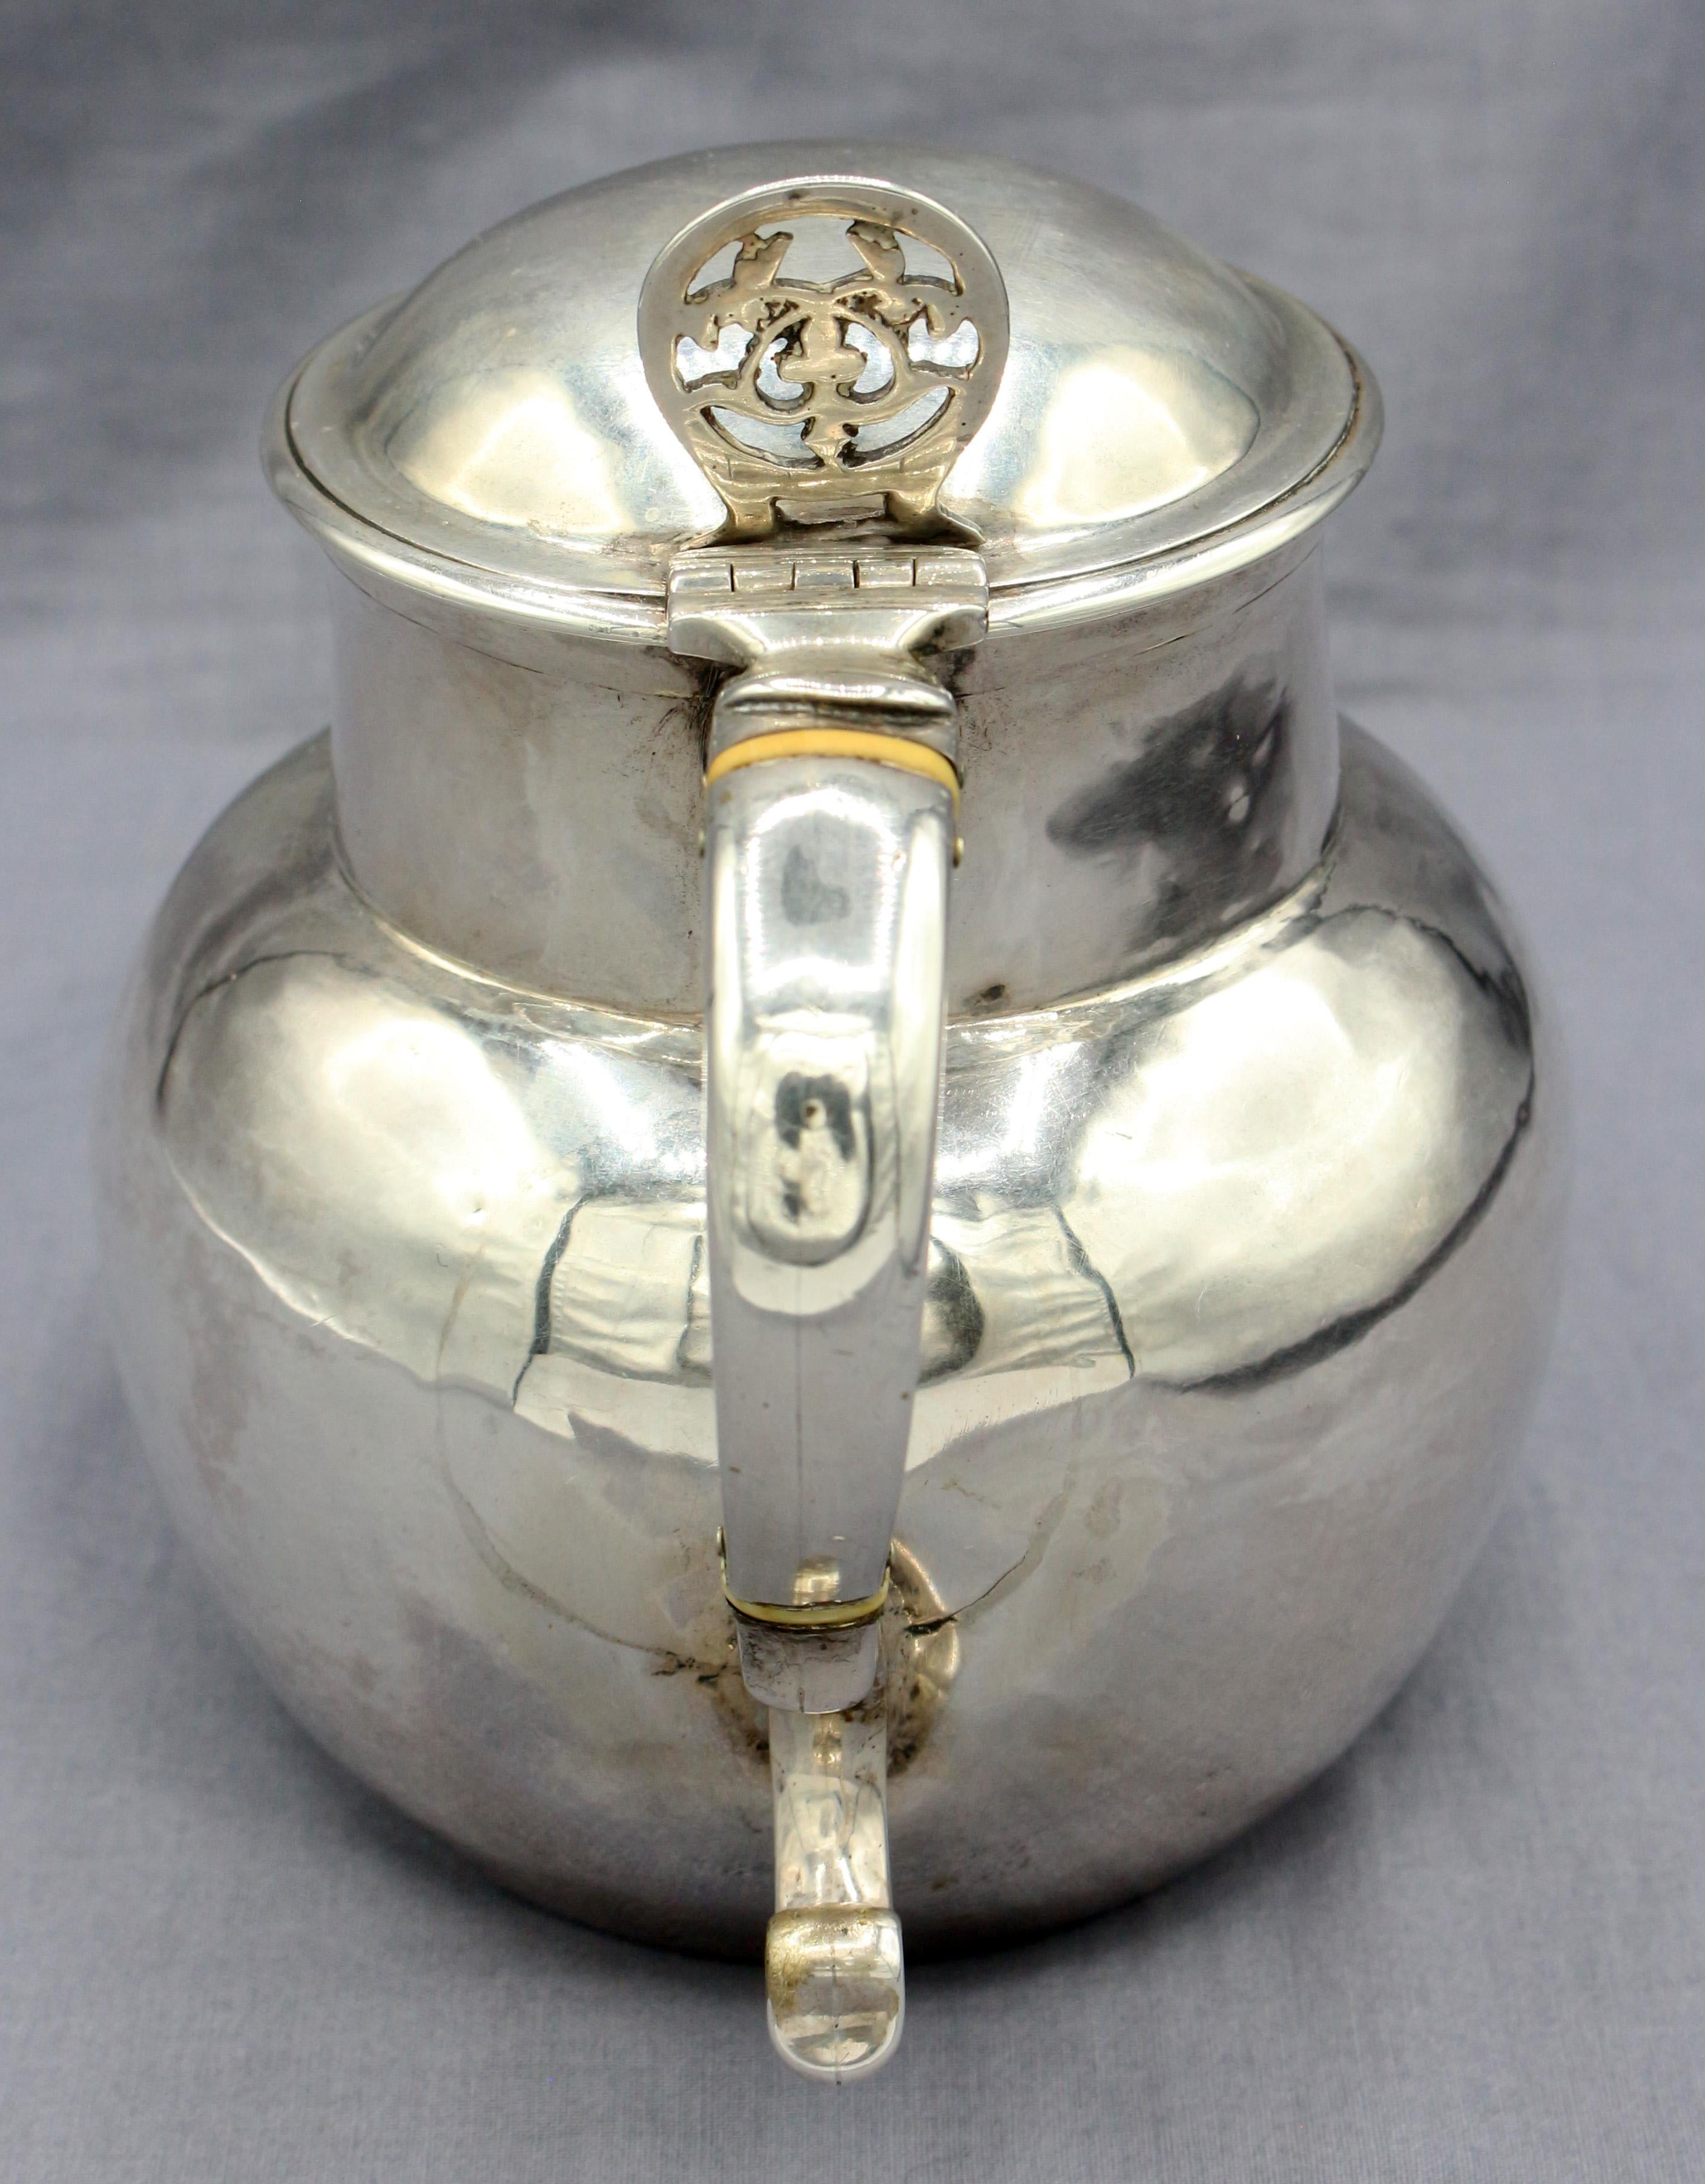 Sterling silver flip-top jug, London, body 1724(?) & flip-top early 20th century. Bone insulators. 11.65 troy oz.
5.75